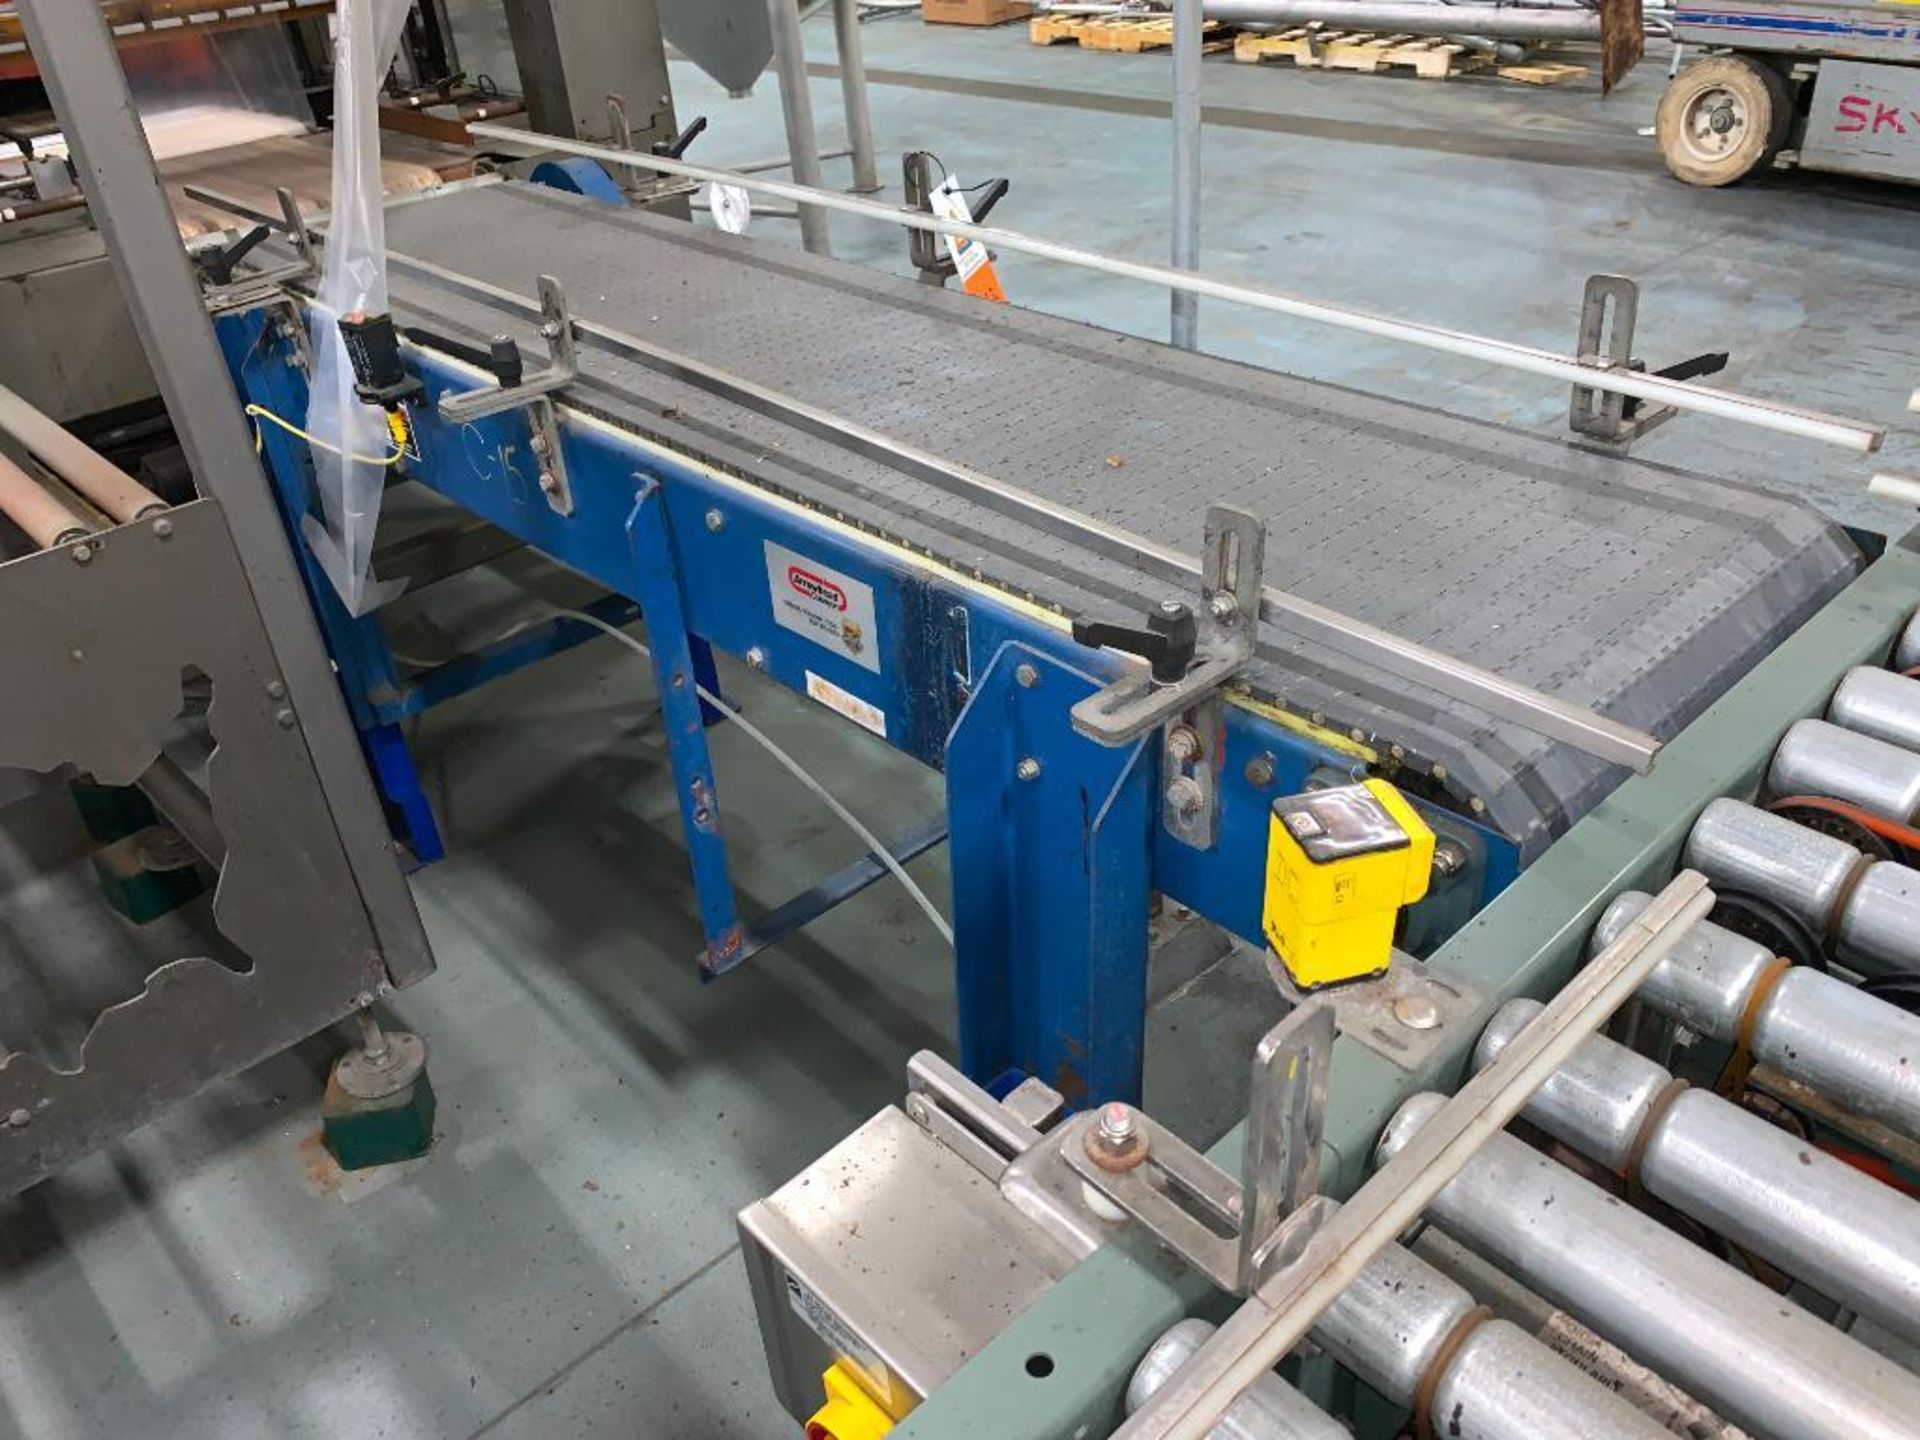 mild steel conveyor, 76 in. x 18 in. x 35 in., gray plastic belt - Image 9 of 9